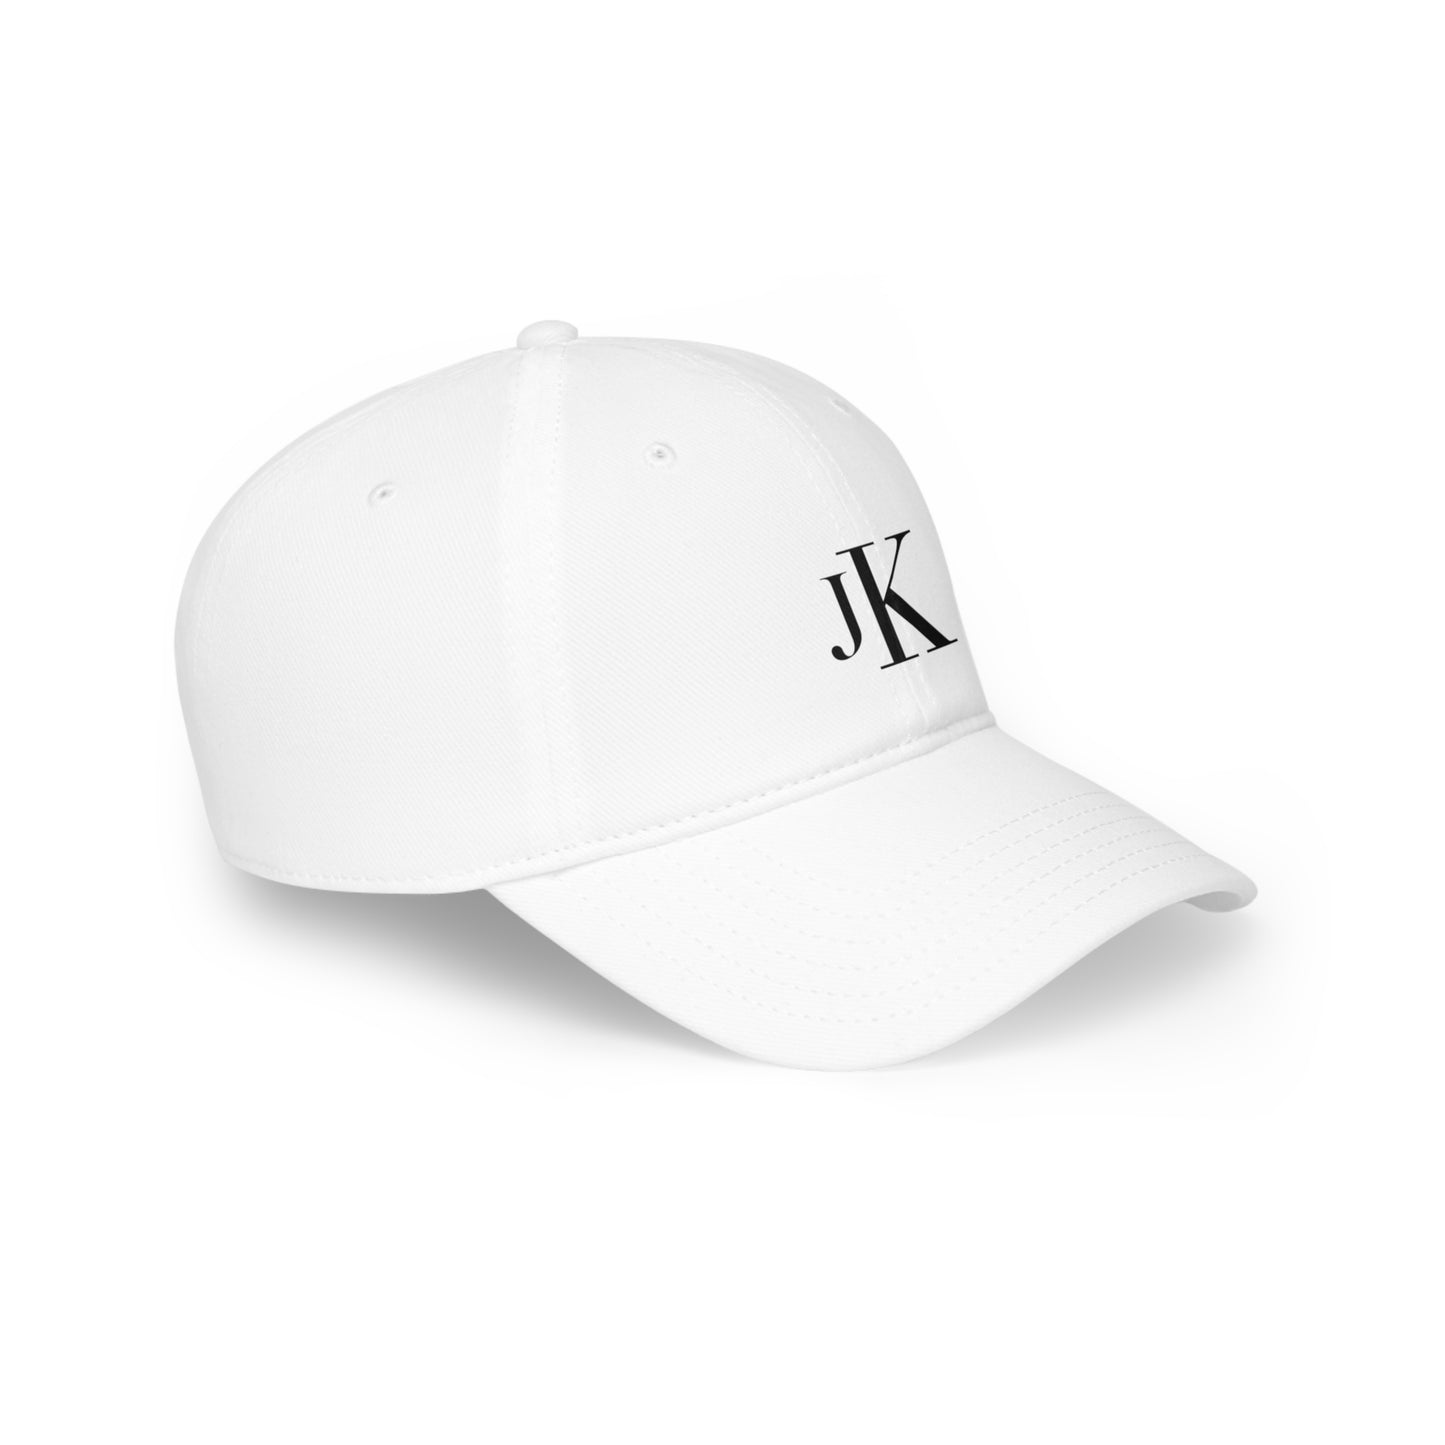 CK x JK Inspired Low Profile Baseball Cap